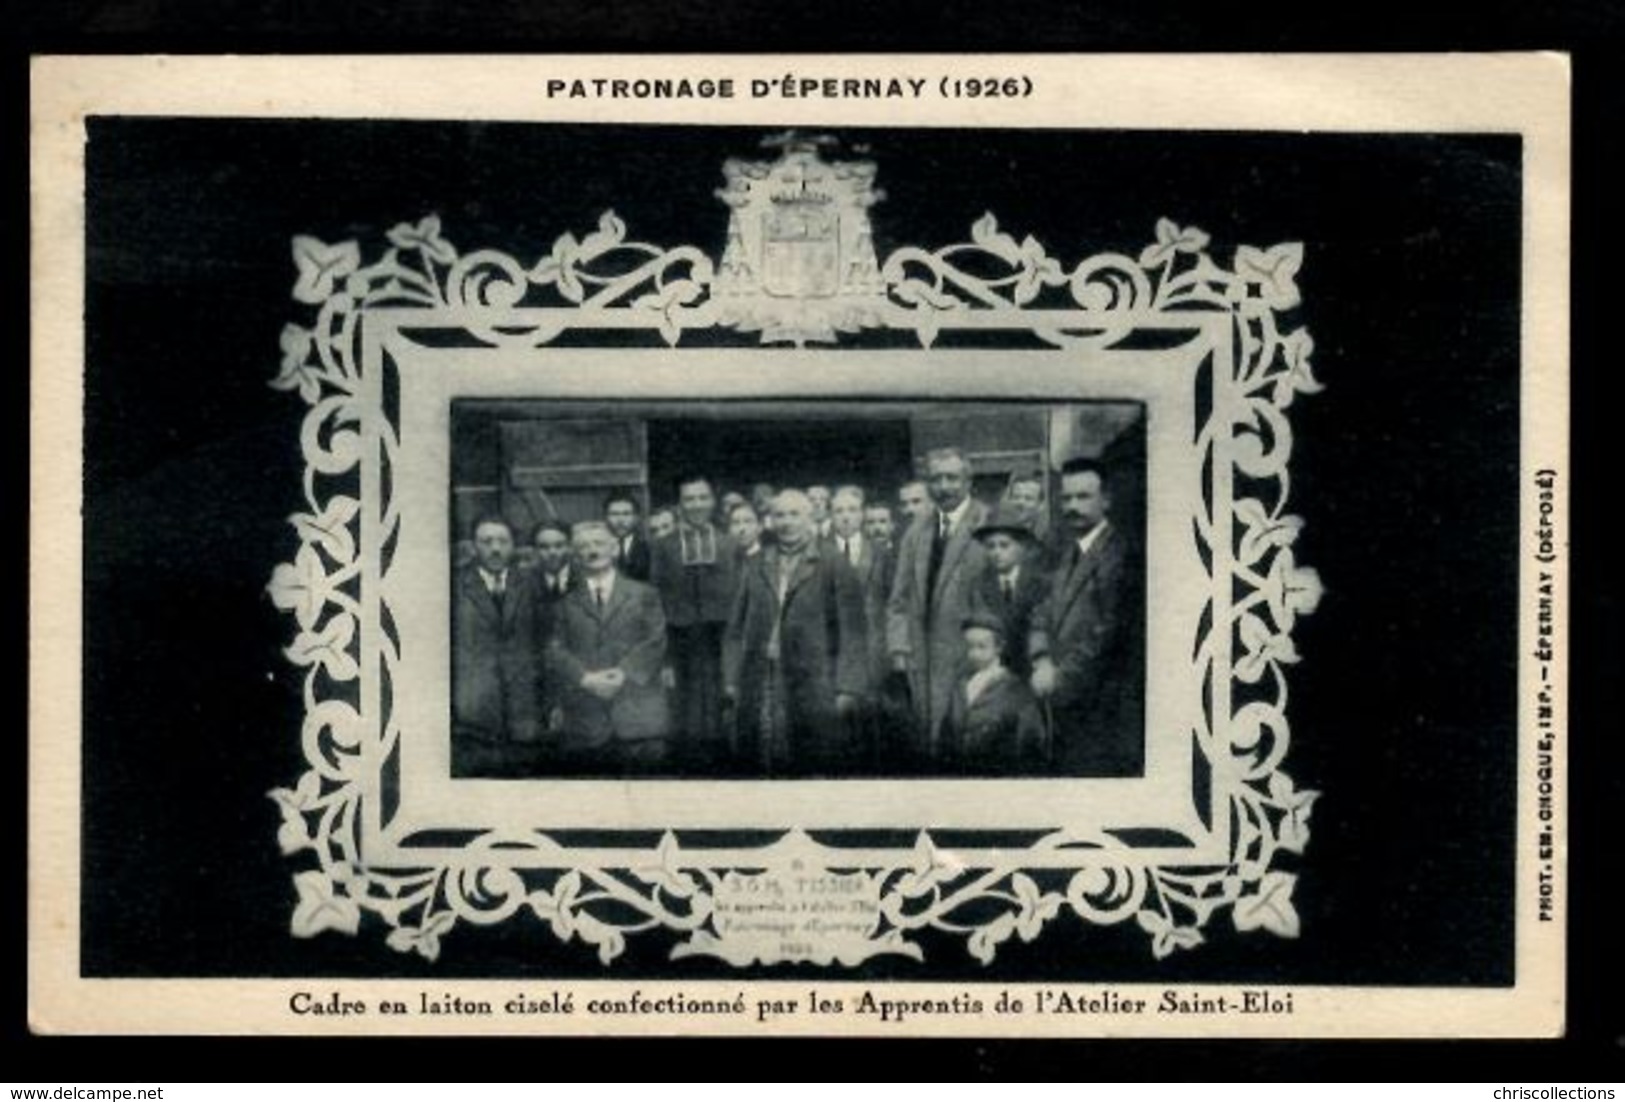 Patronage D'EPERNAY(1926) - Cadre En Laiton Ciselé Confectionnépar Les Apprentis De L'Atelier Saint-Eloi - Epernay